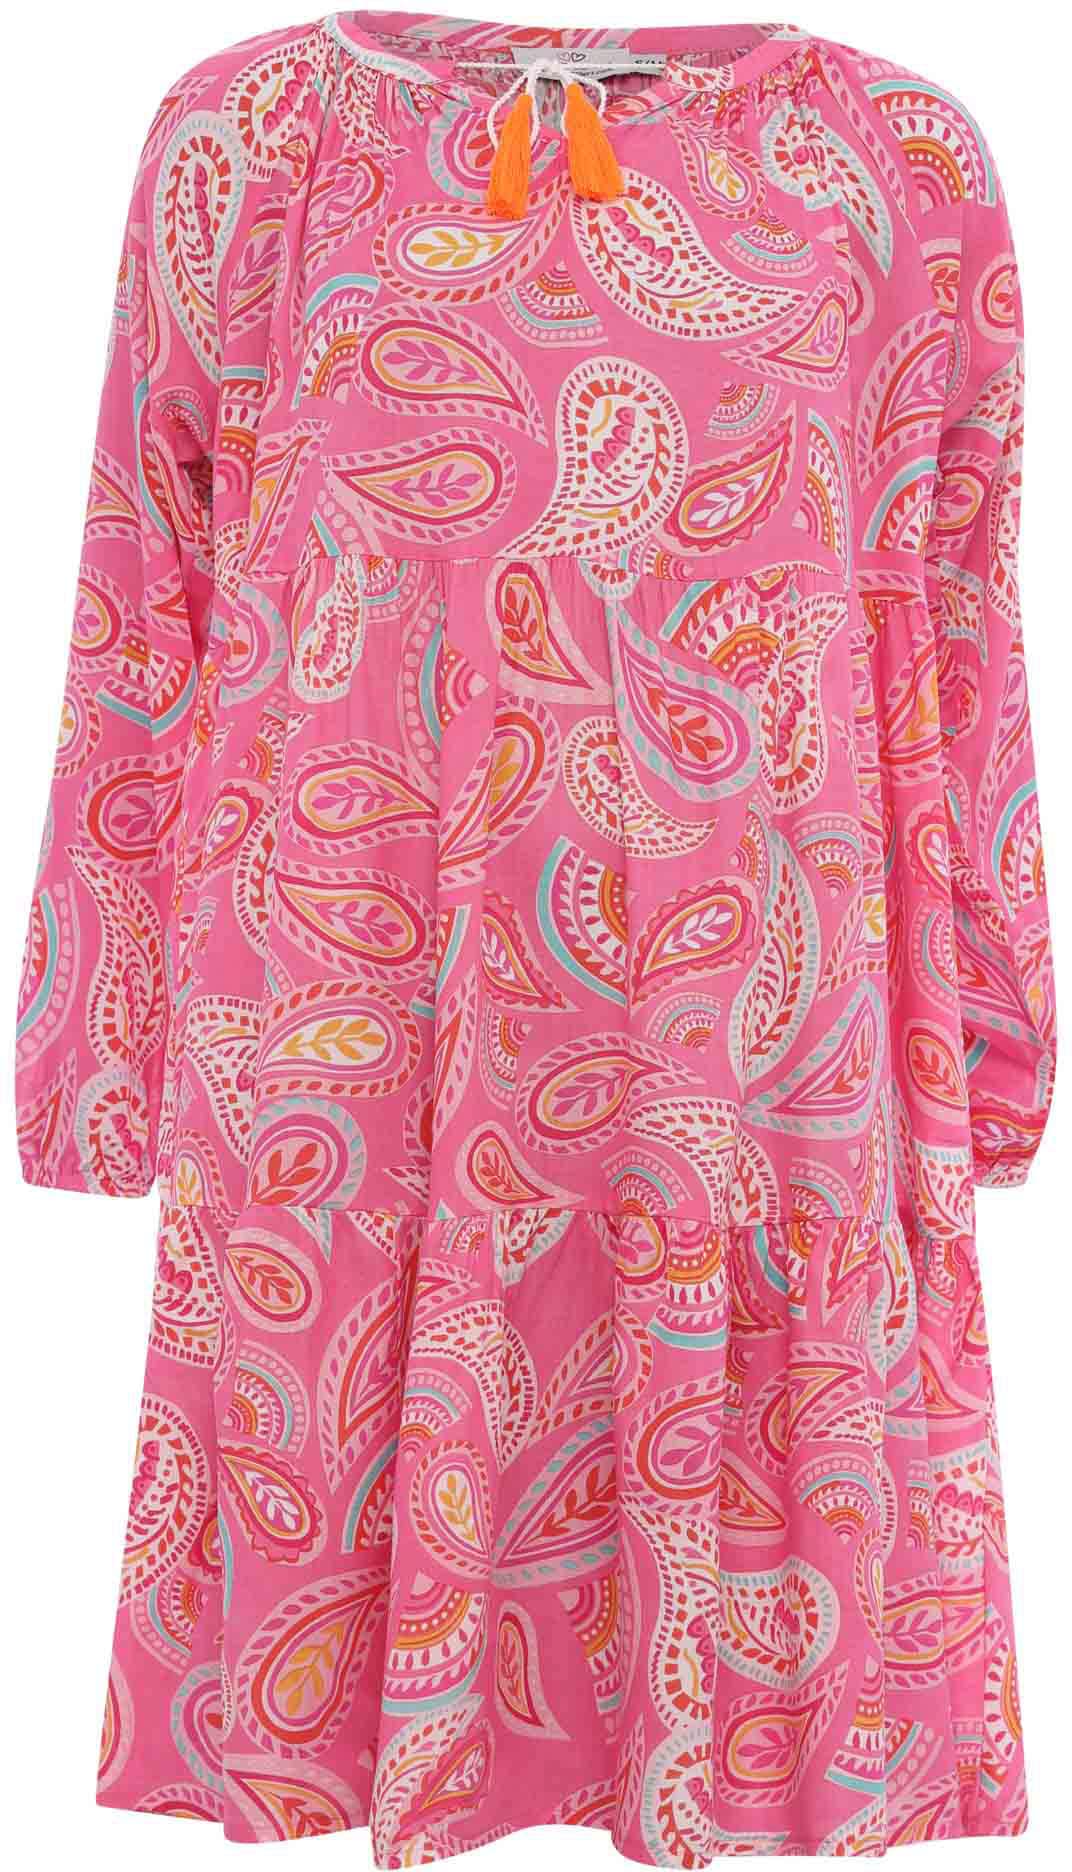 Pinkes Kleid online kaufen | Pinkfarbene Kleider jetzt bei OTTO